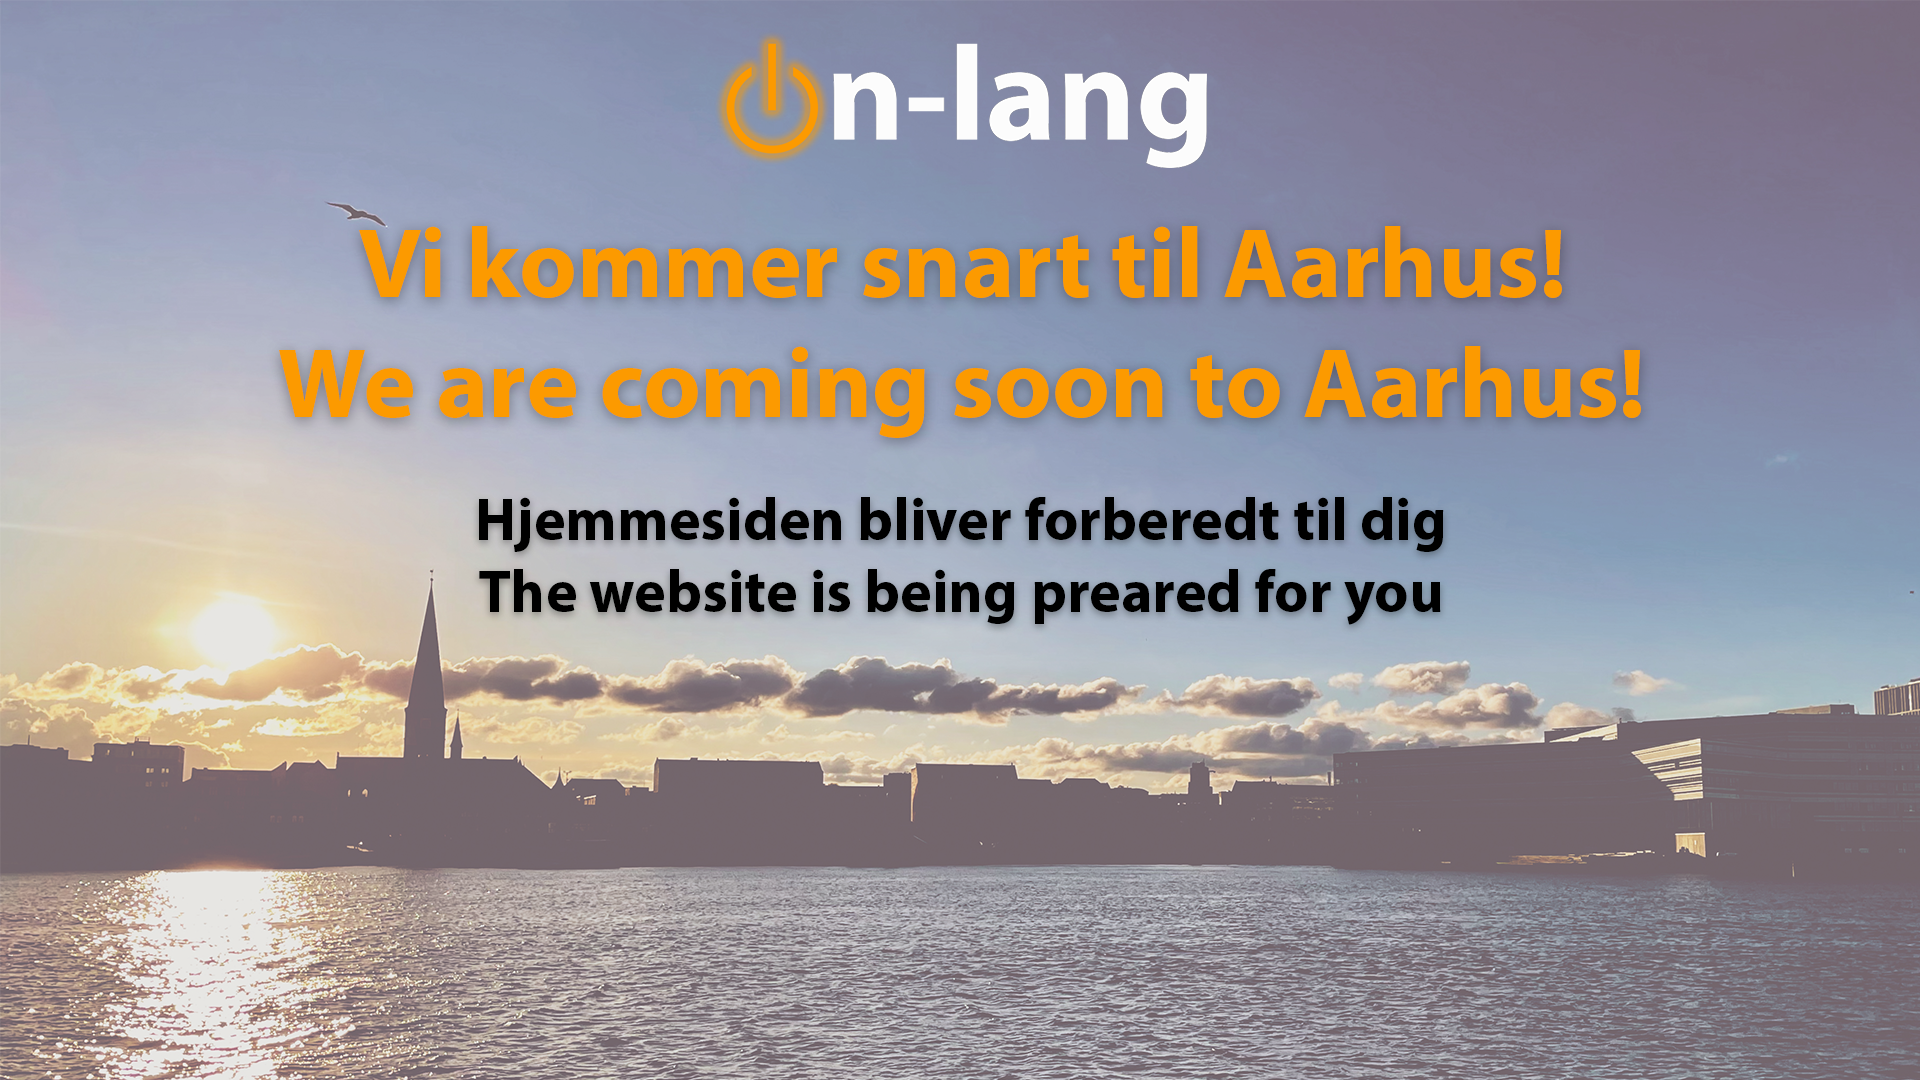 We are coming soon to Aarhus!